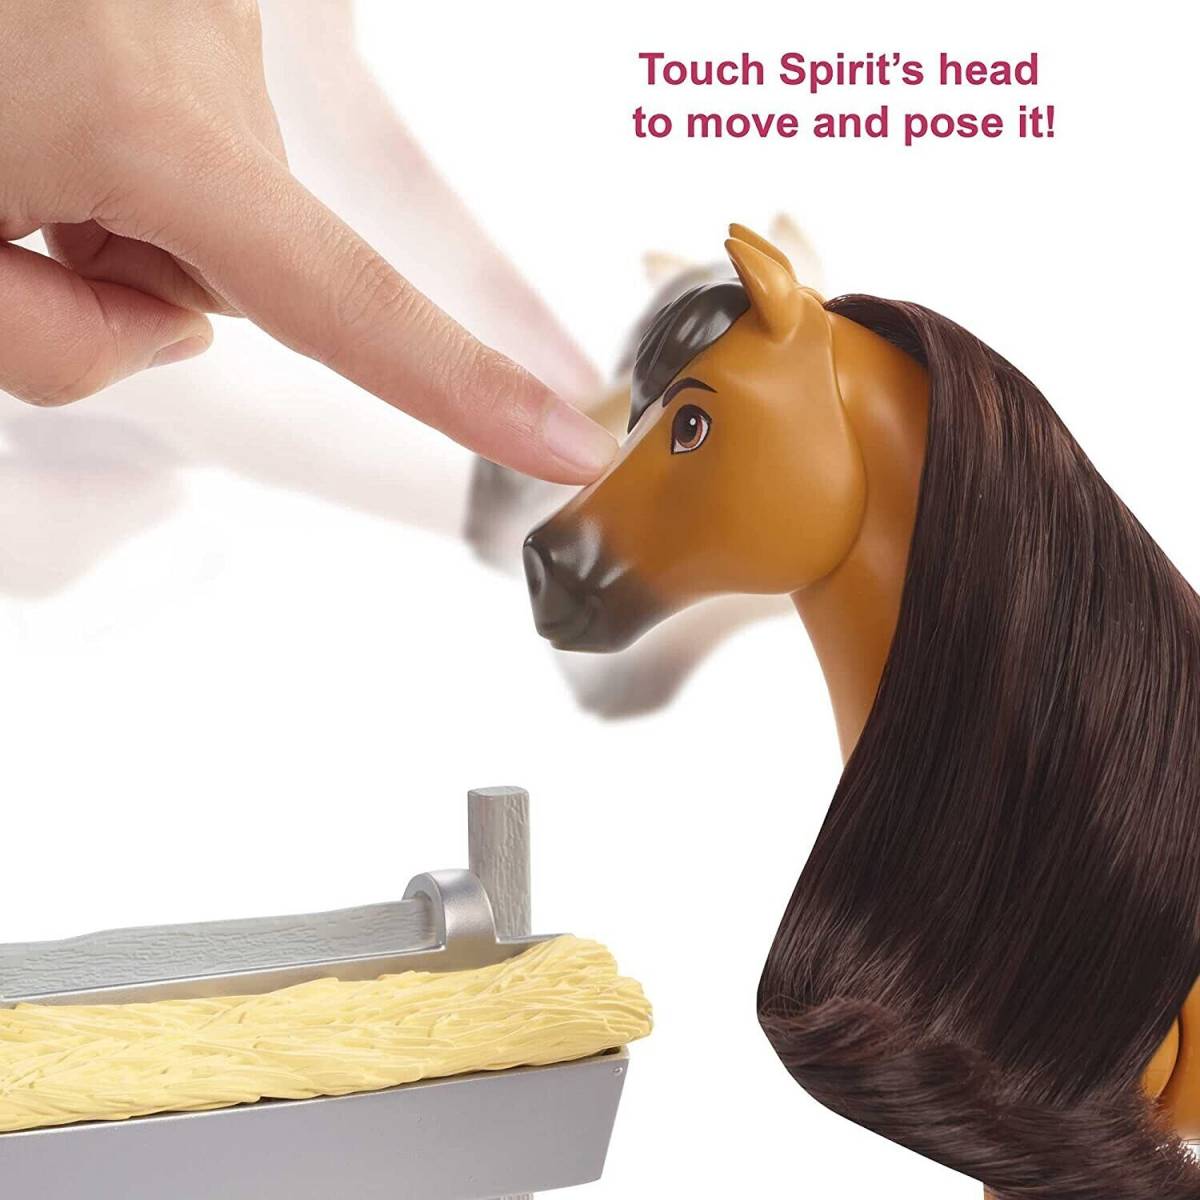 Set Figurine cheval + accessoires, avec sons Spirit DreamWorks